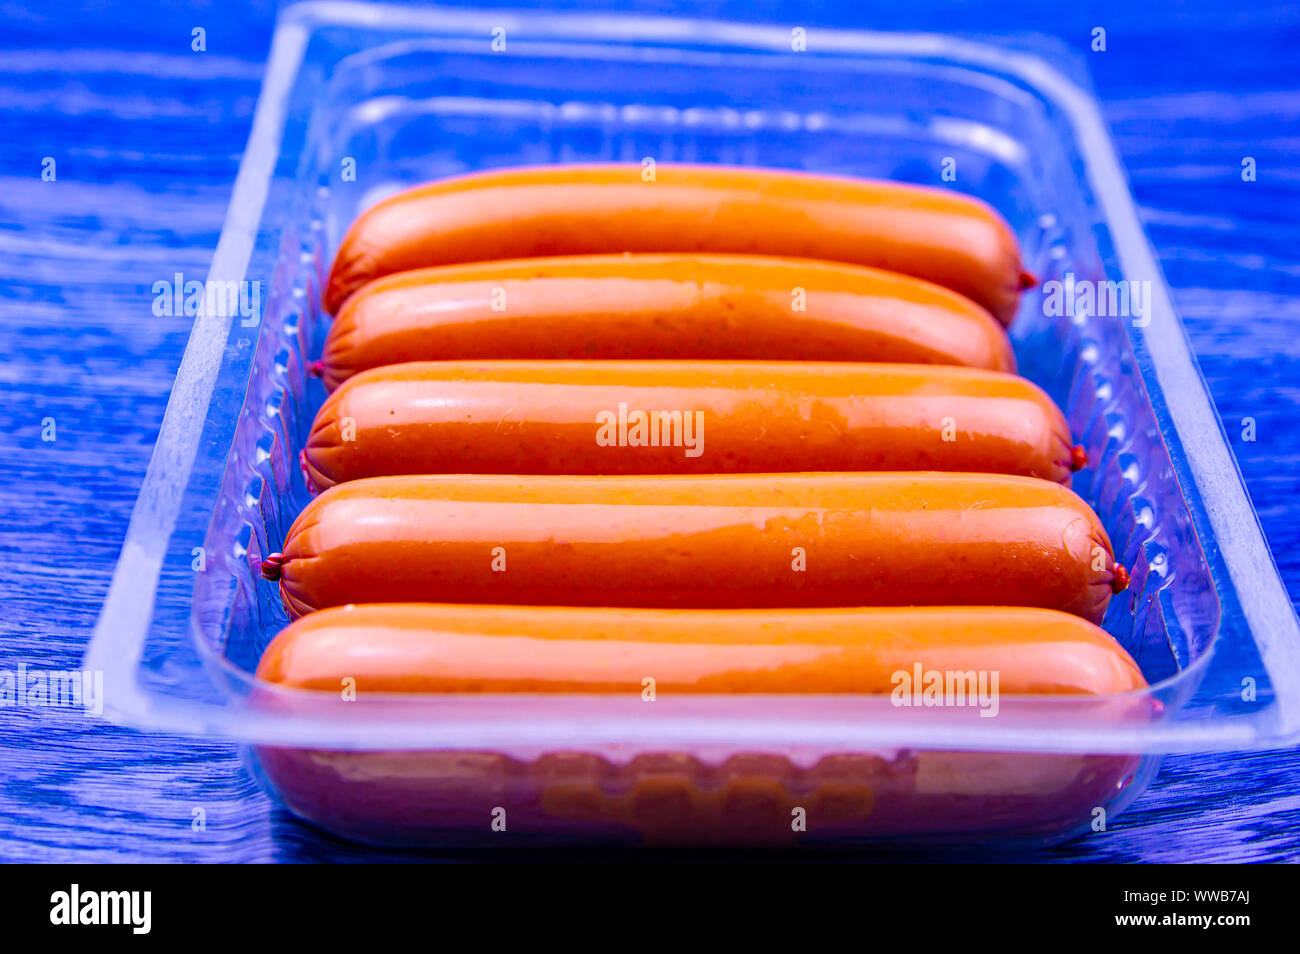 Verpackte Fleisch Wurst in einer Reihe. Essen Foto Stockfotografie - Alamy